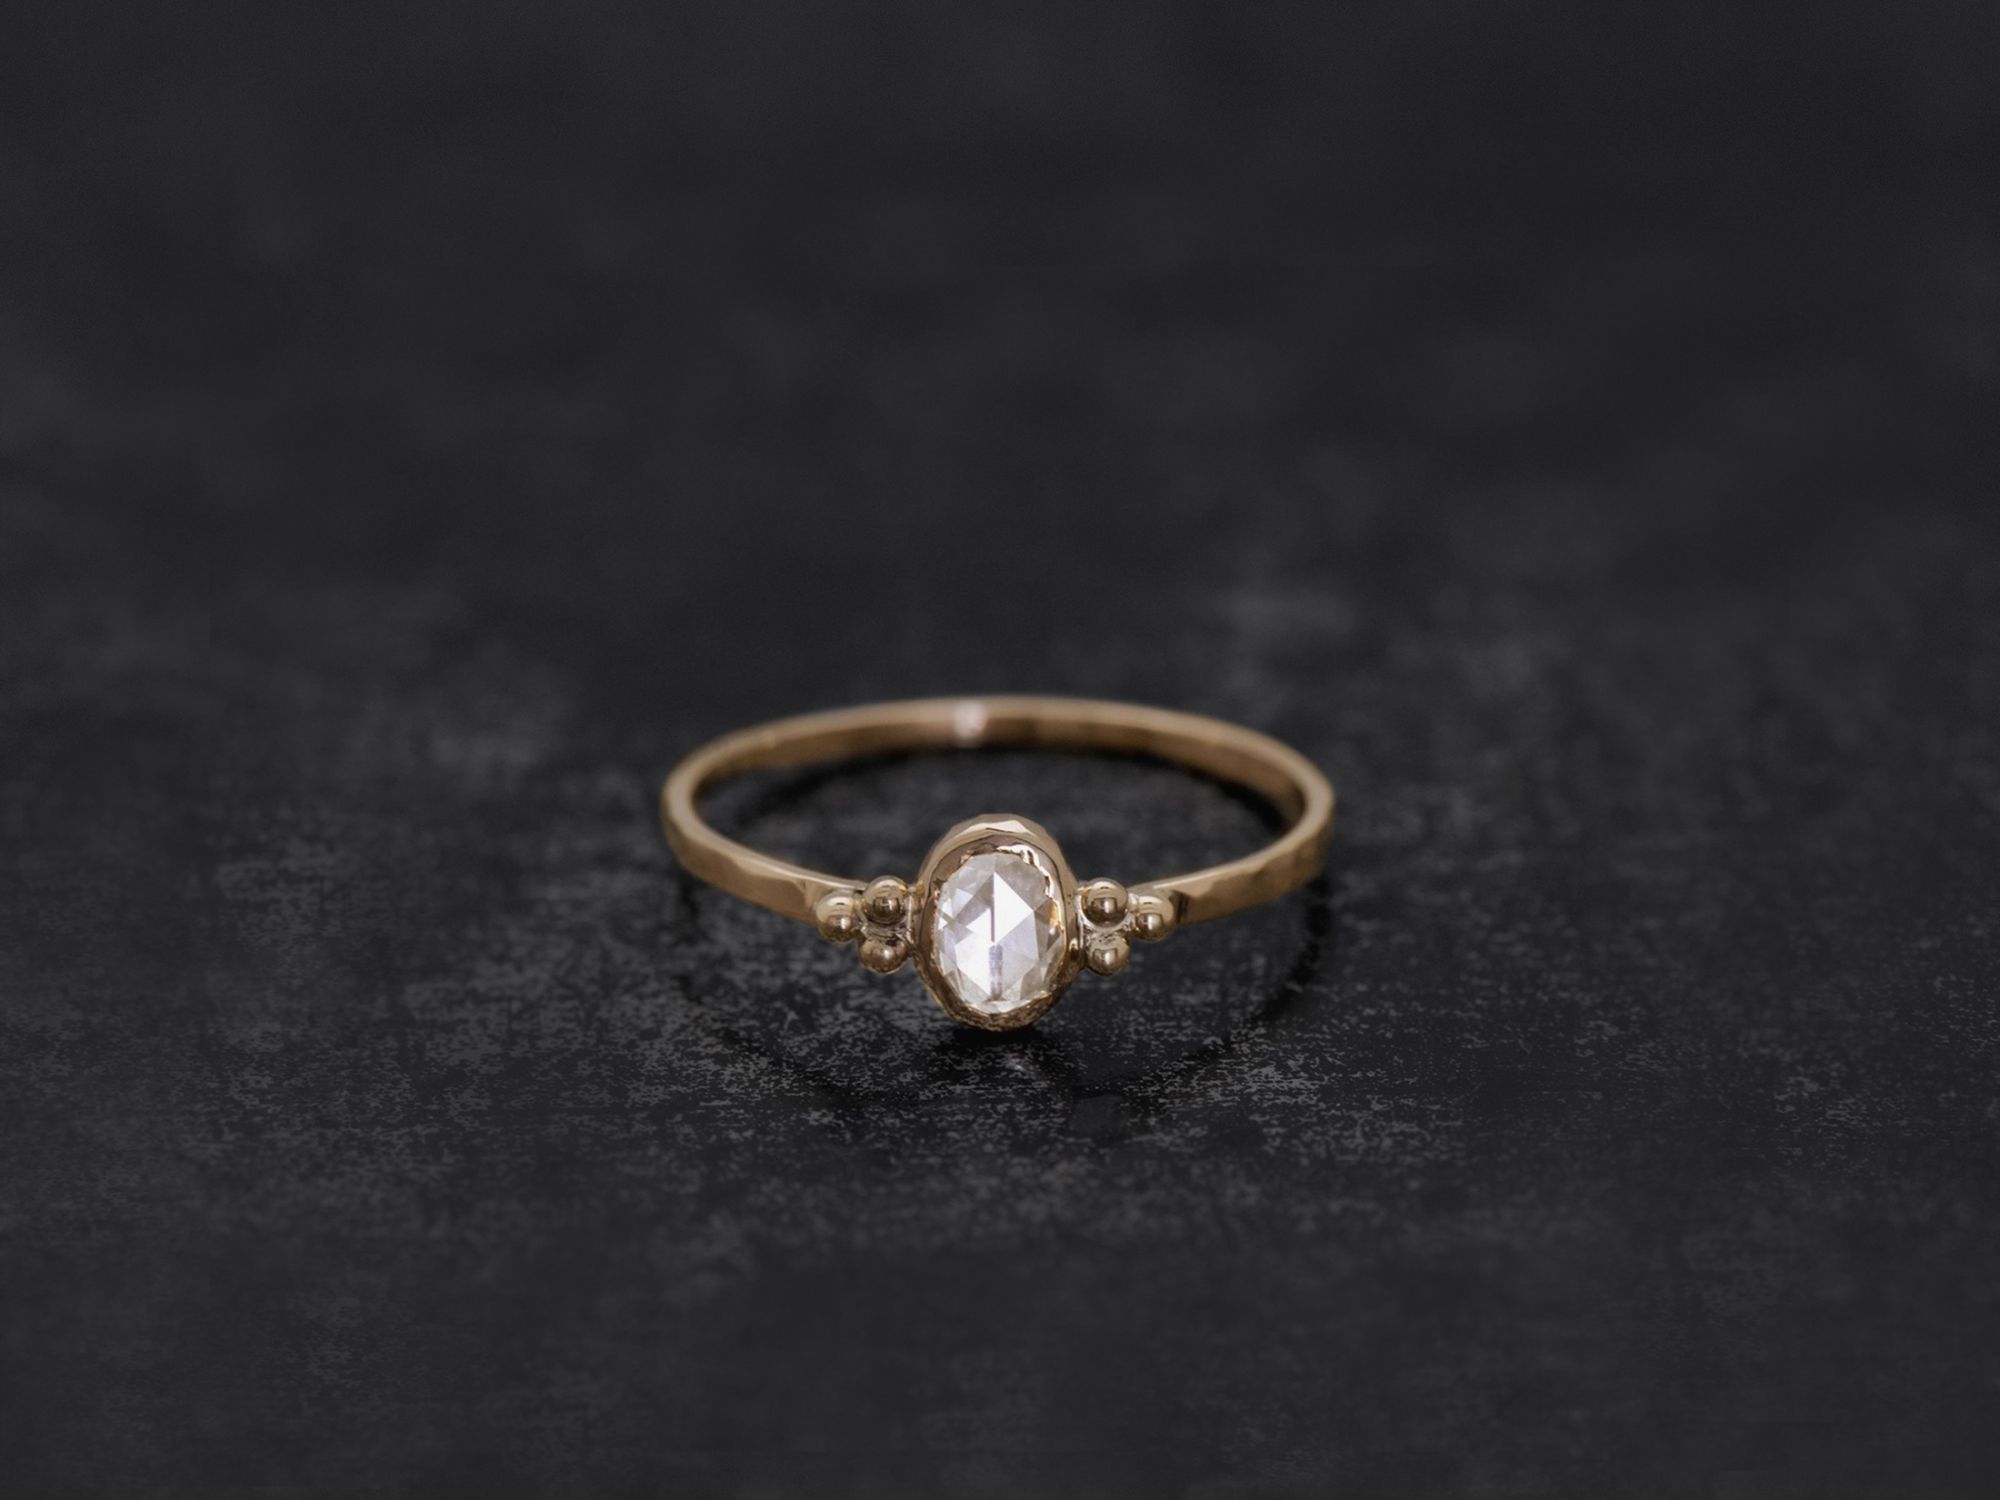 Bague Zelda diamant rosecut ovale miel par Emmanuelle Zysman